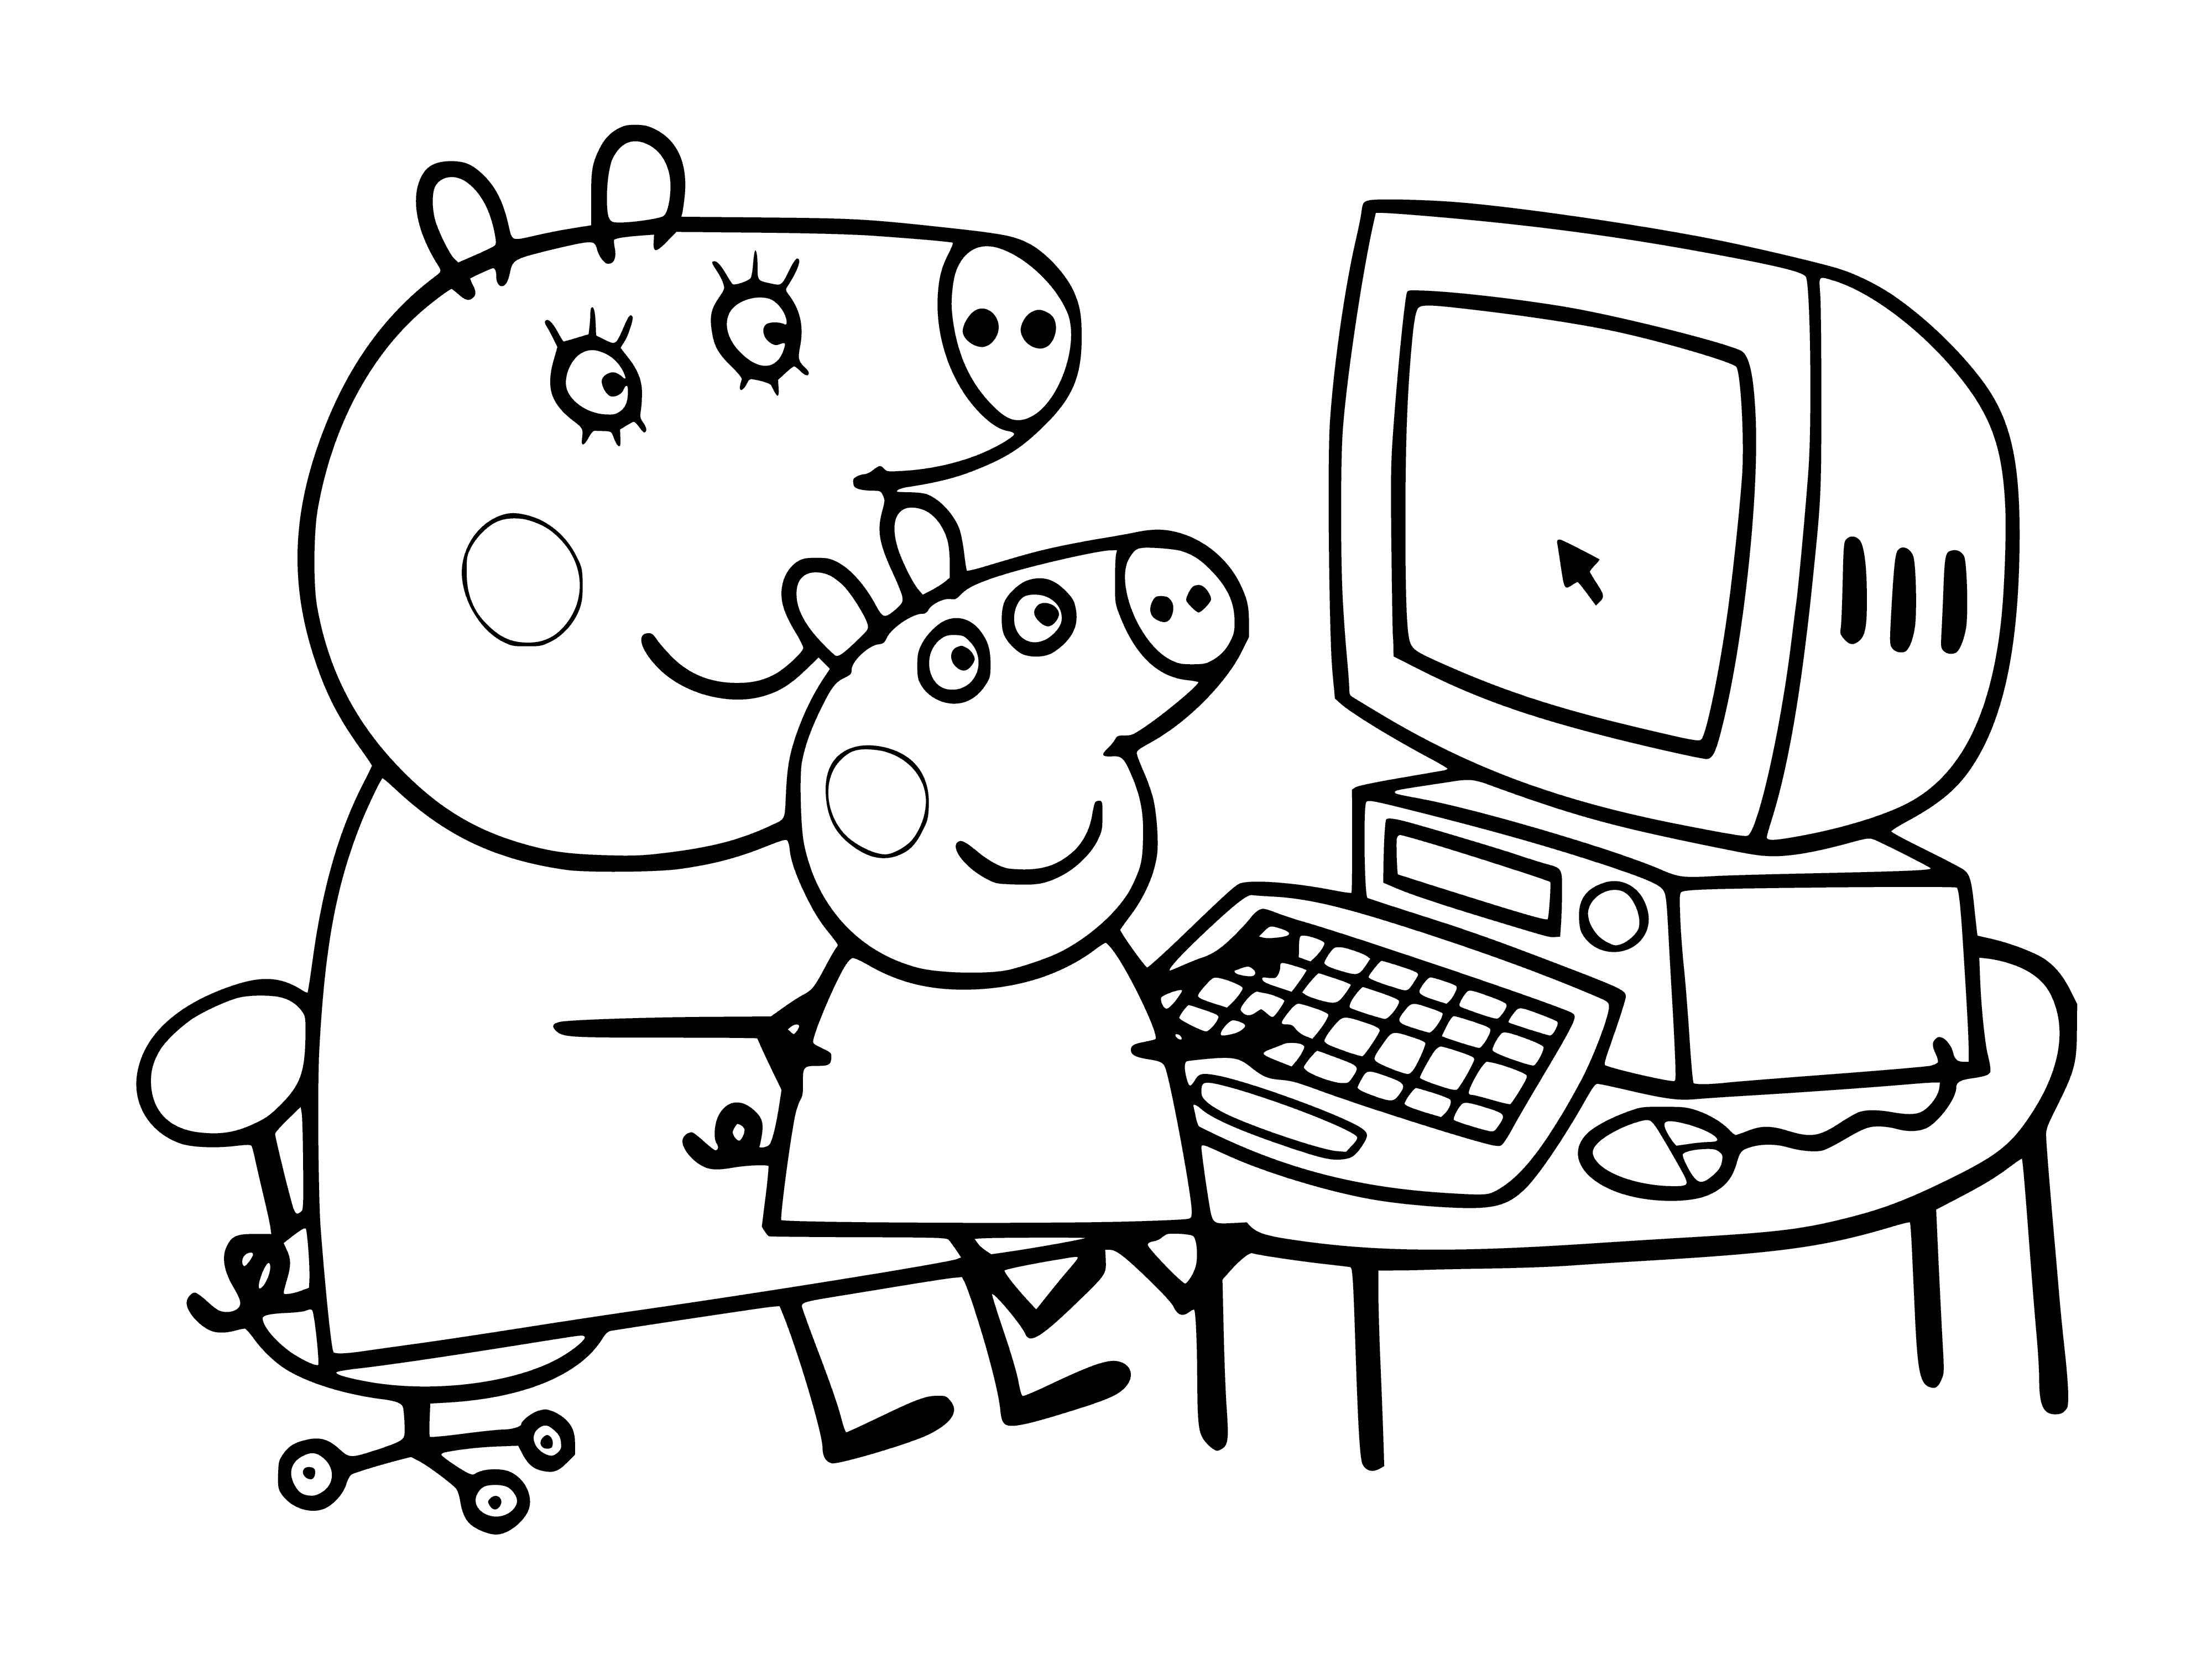 Peppa à l'ordinateur coloriage